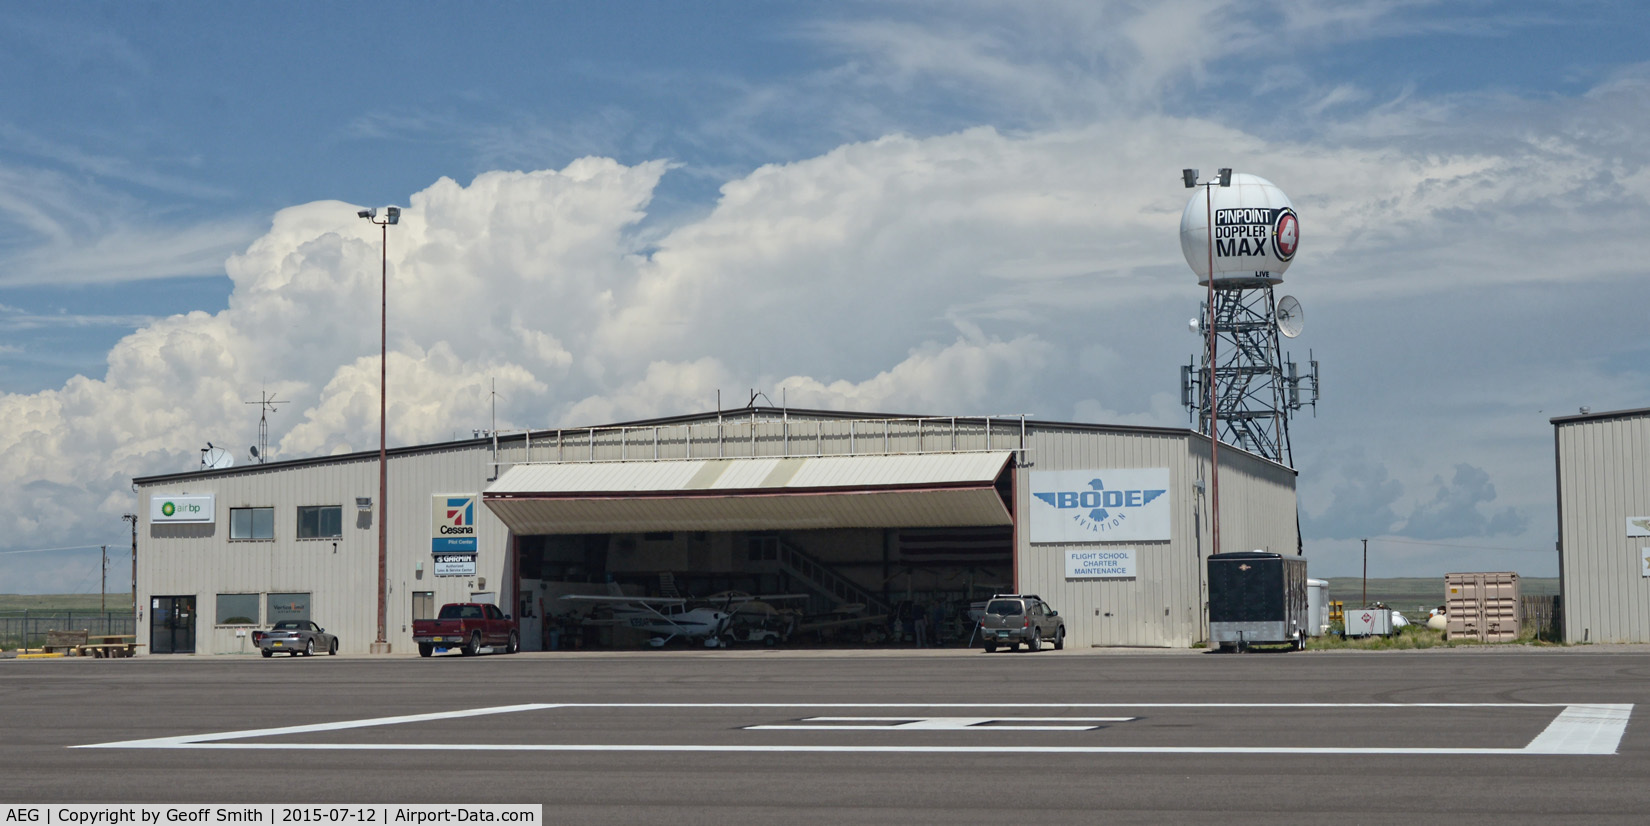 Double Eagle Ii Airport (AEG) - Double Eagle Ii airport, Albuquerque NM 